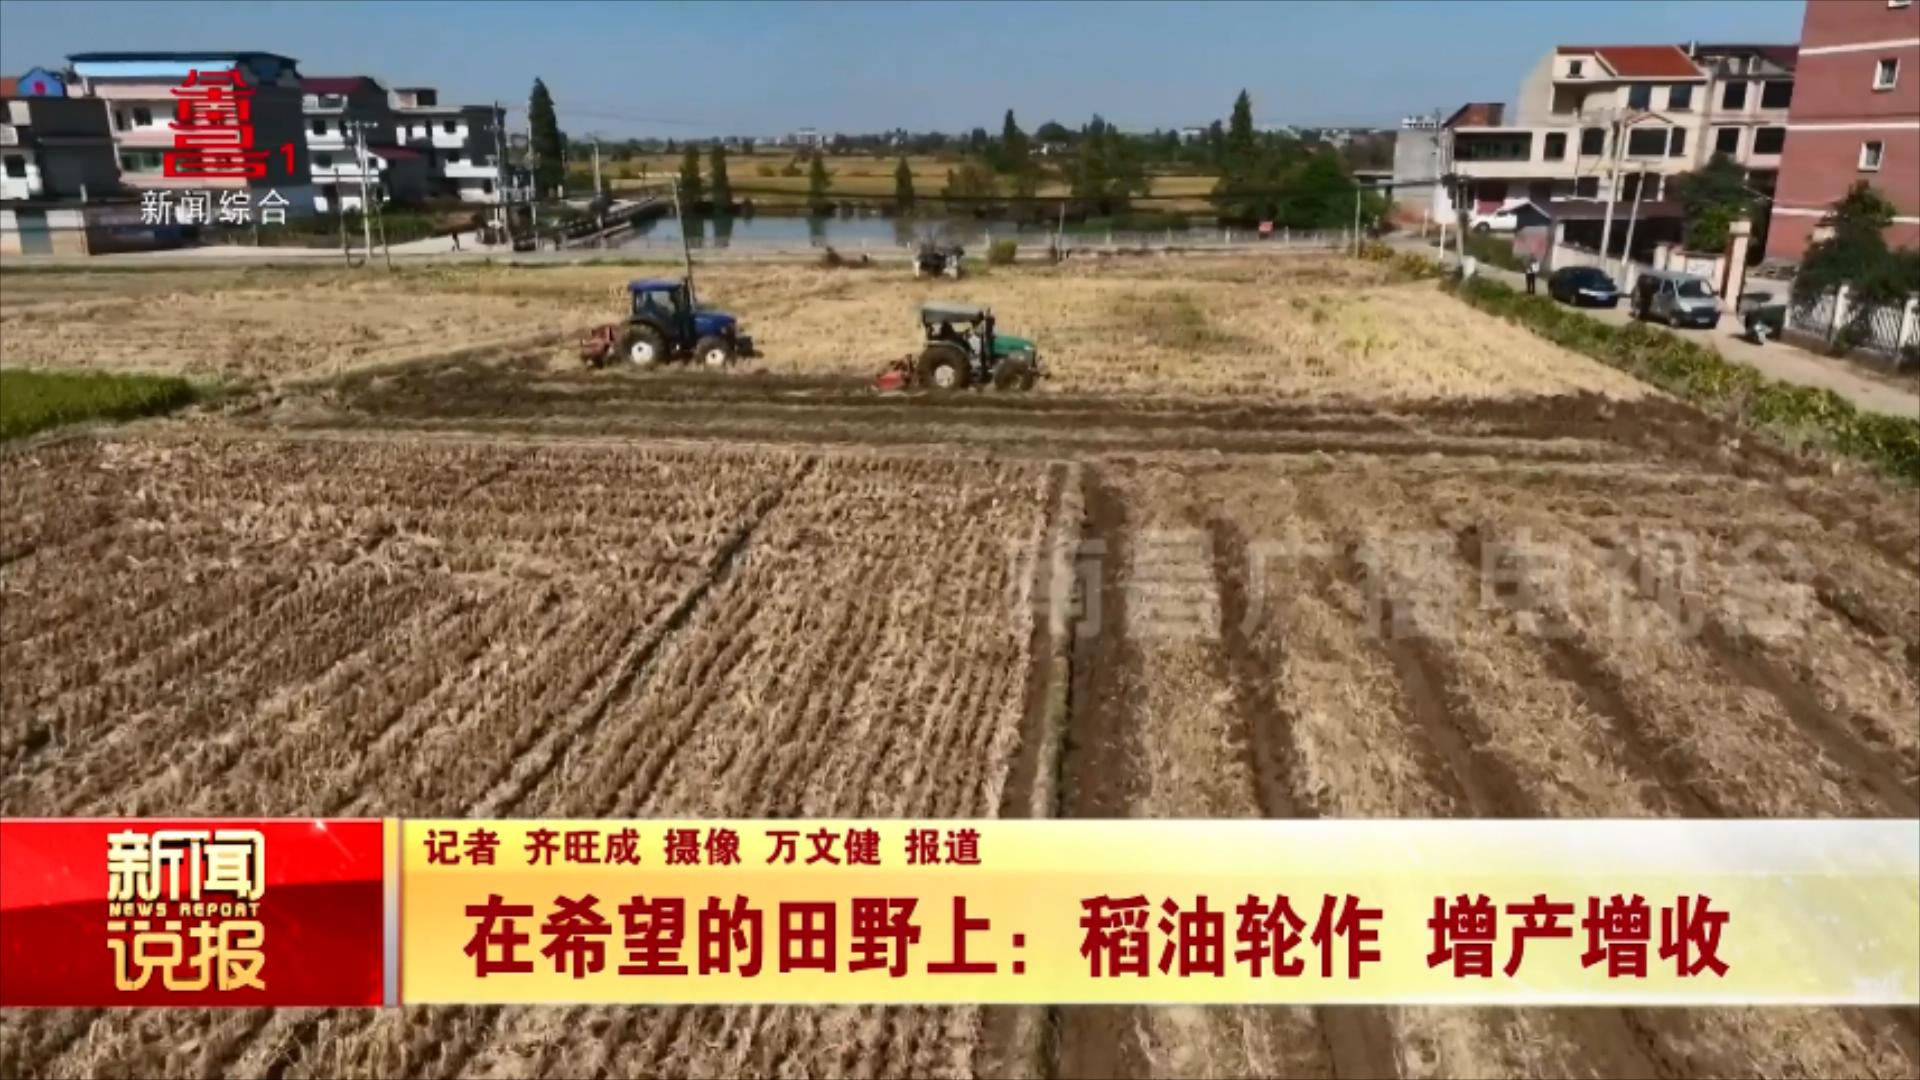 在希望的田野上：稻油轮作 增产增收